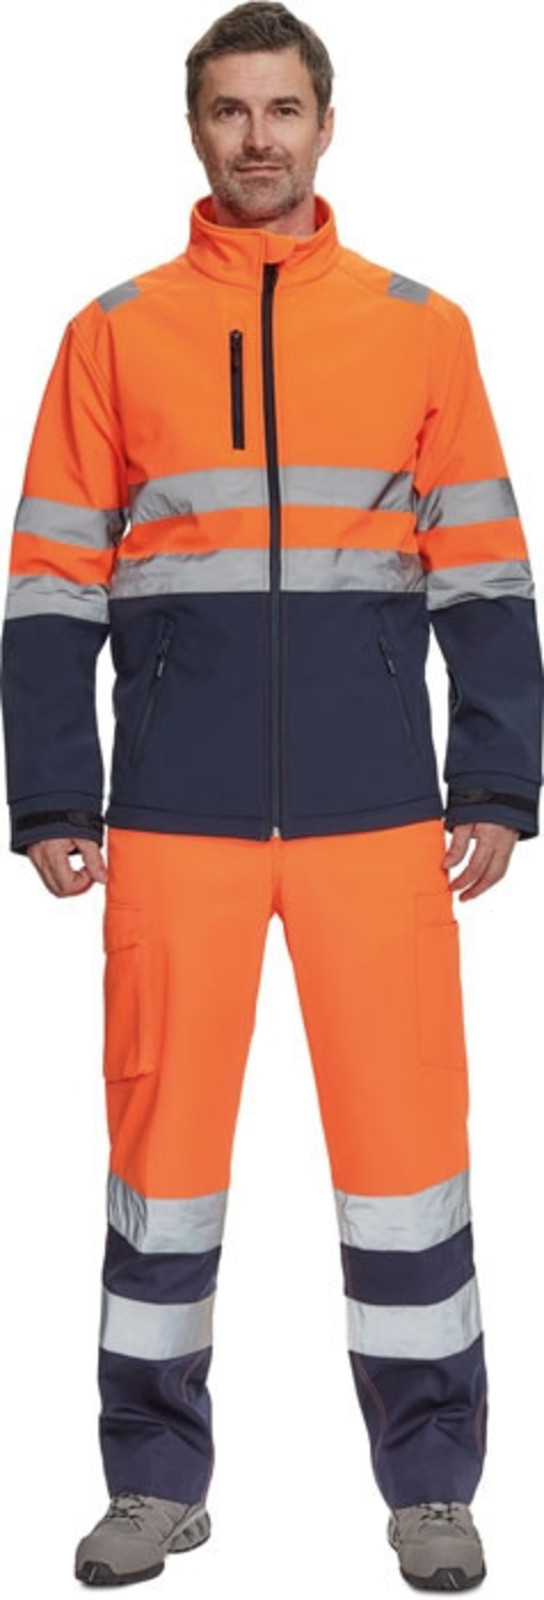 Reflexná softshellová bunda Cerva Granada HV - veľkosť: L, farba: oranžová/navy